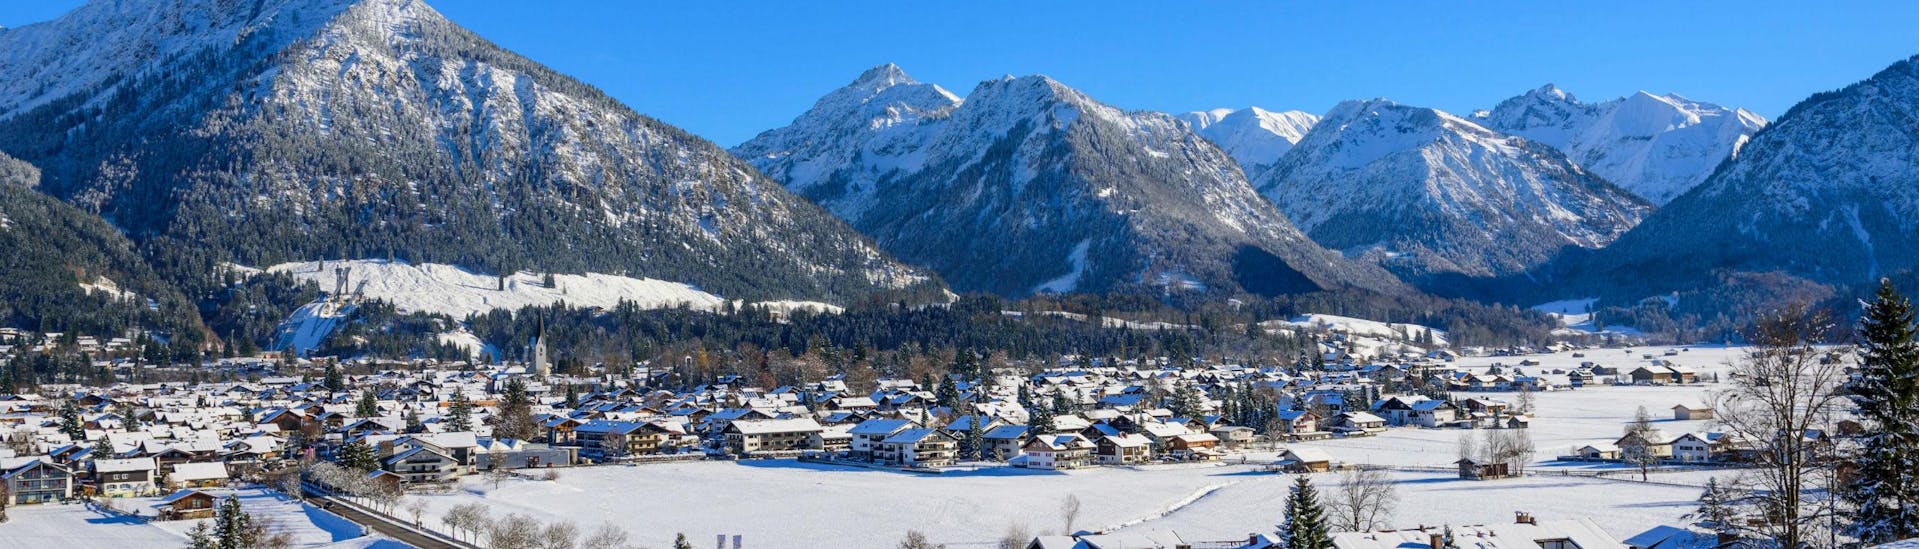 Blick auf die malerische Ortschaft Oberstorf, ein von den bayrischen Alpen umzingeltes Skigebiet in dem die örtlichen Skischulen eine Vielzahl an Skikursen anbieten. 